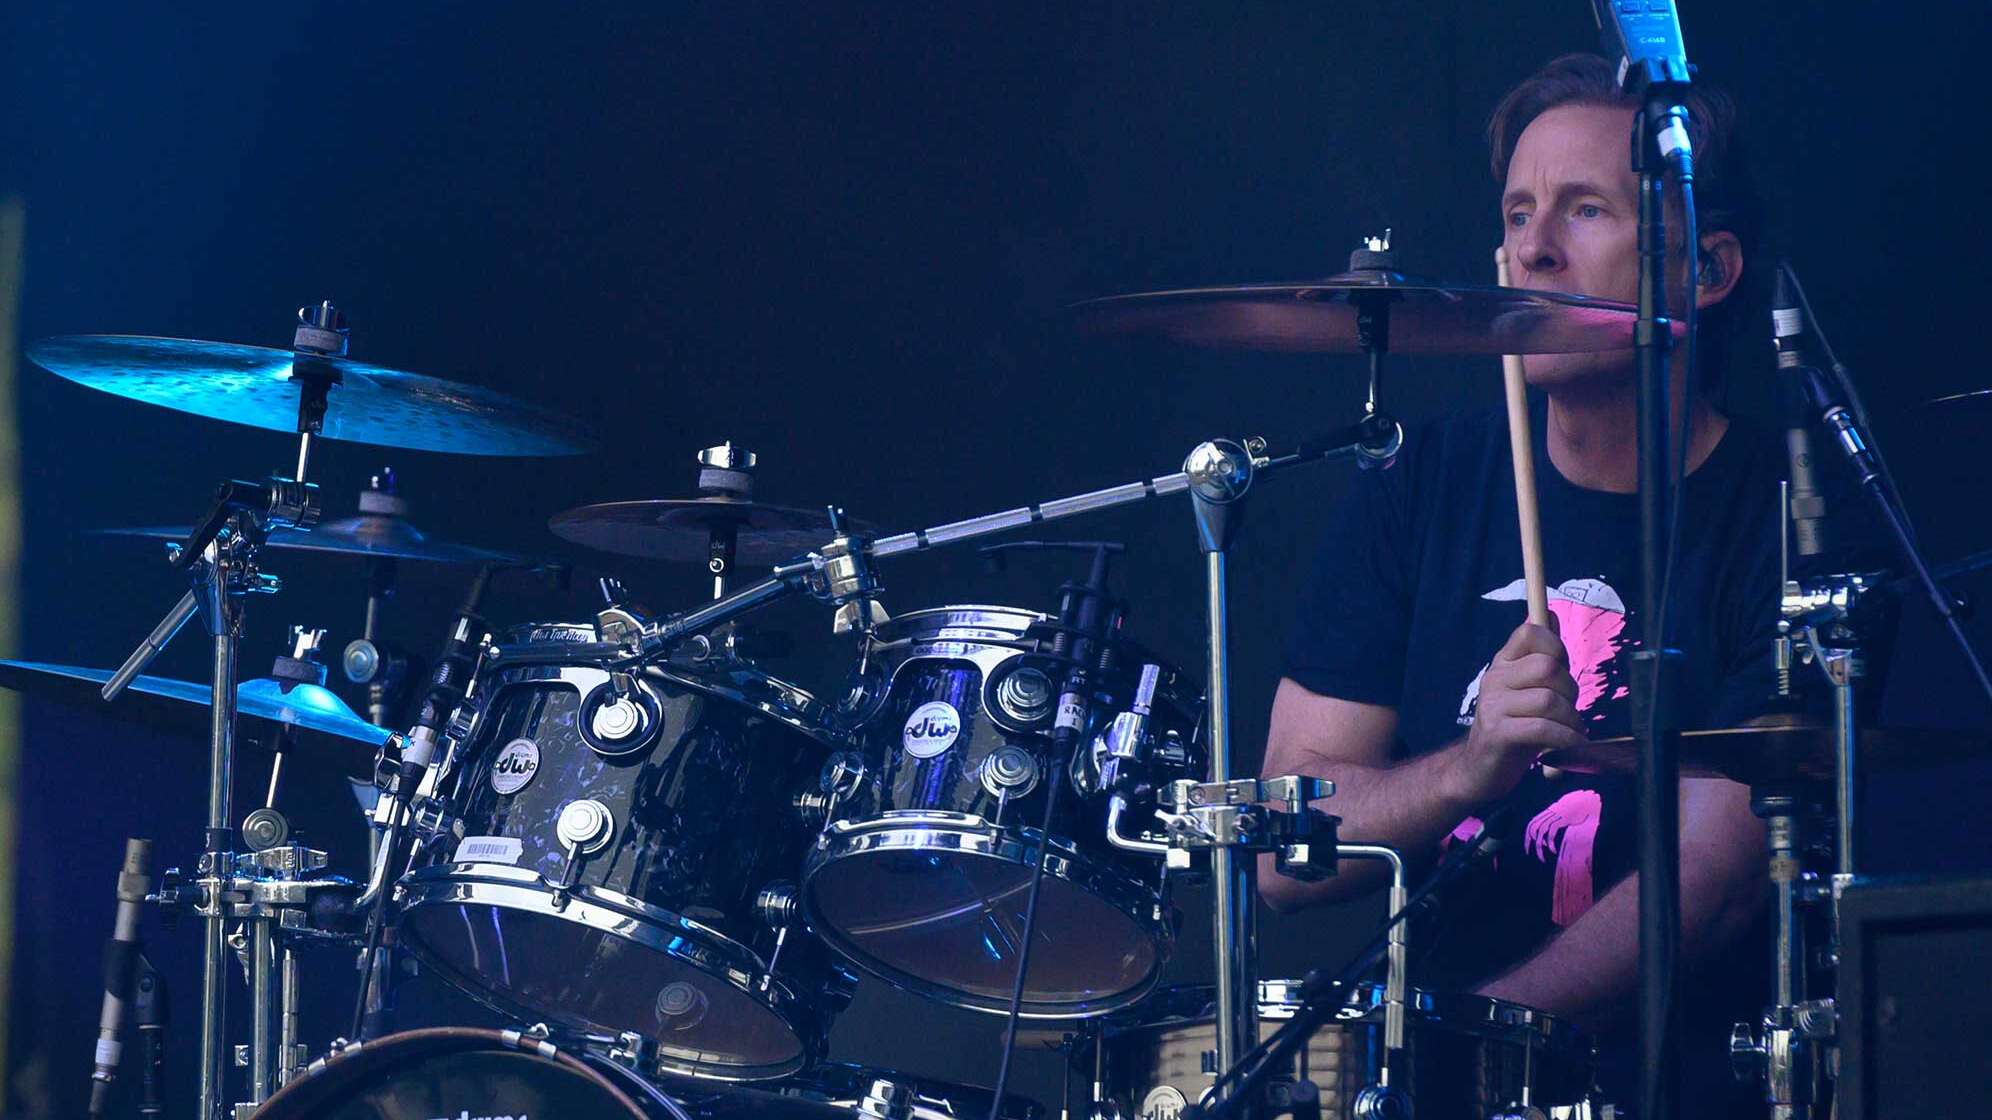 Der neue Foo Fighters-Drummer Josh Freese während eines Live-Auftritts am Schlagzeug.